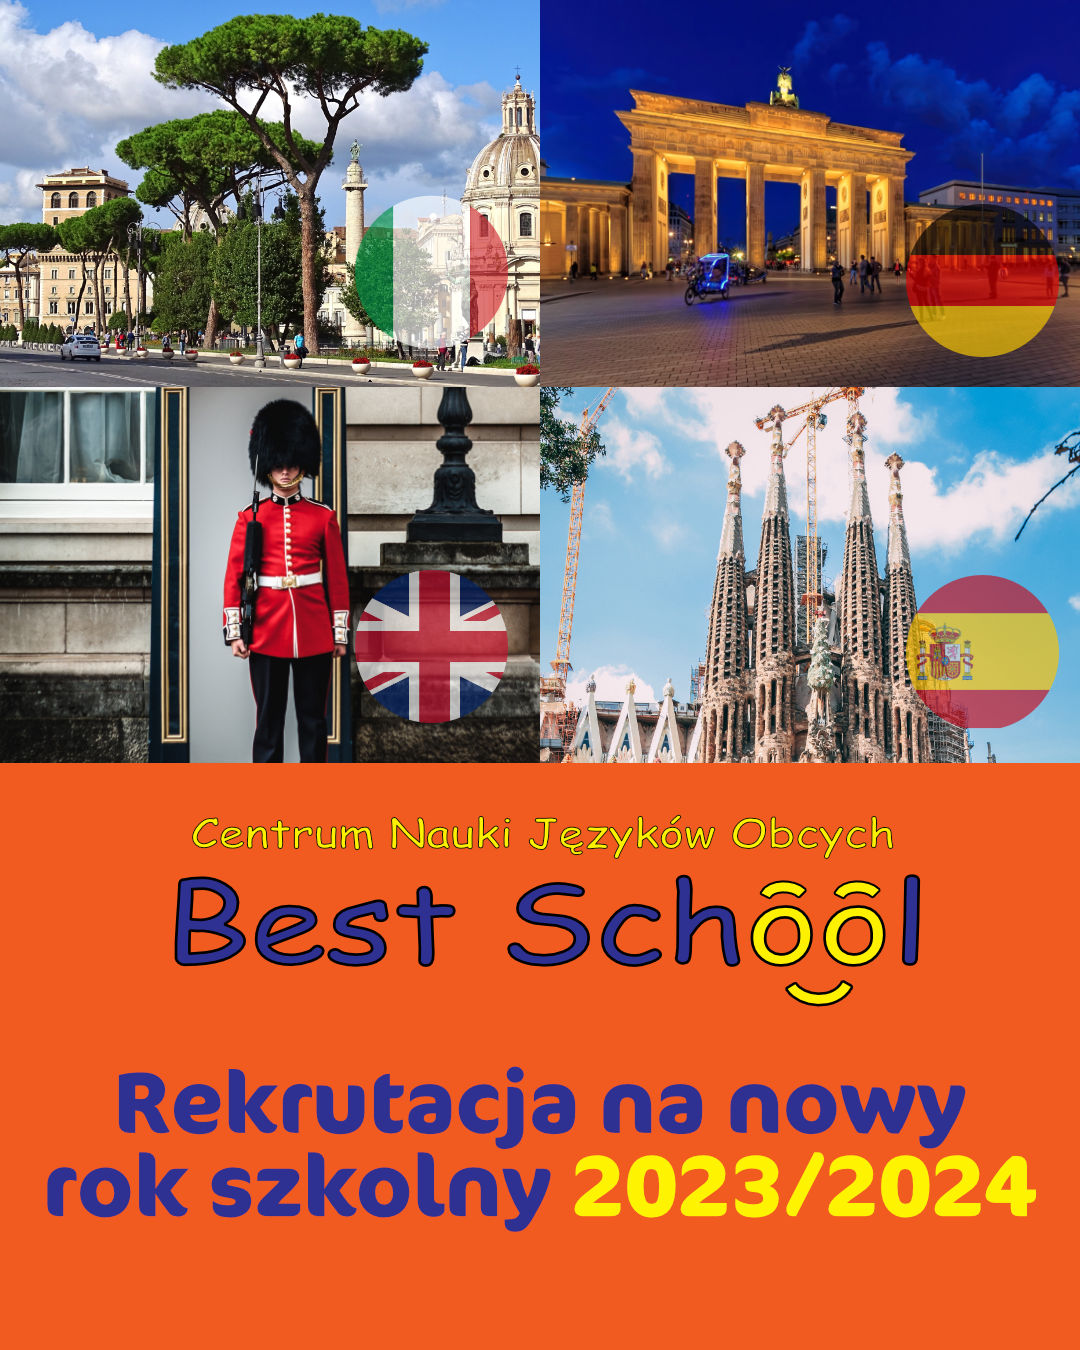 Rekrutacja do szkoły językowej BEST-SCHOOL 2023-2024